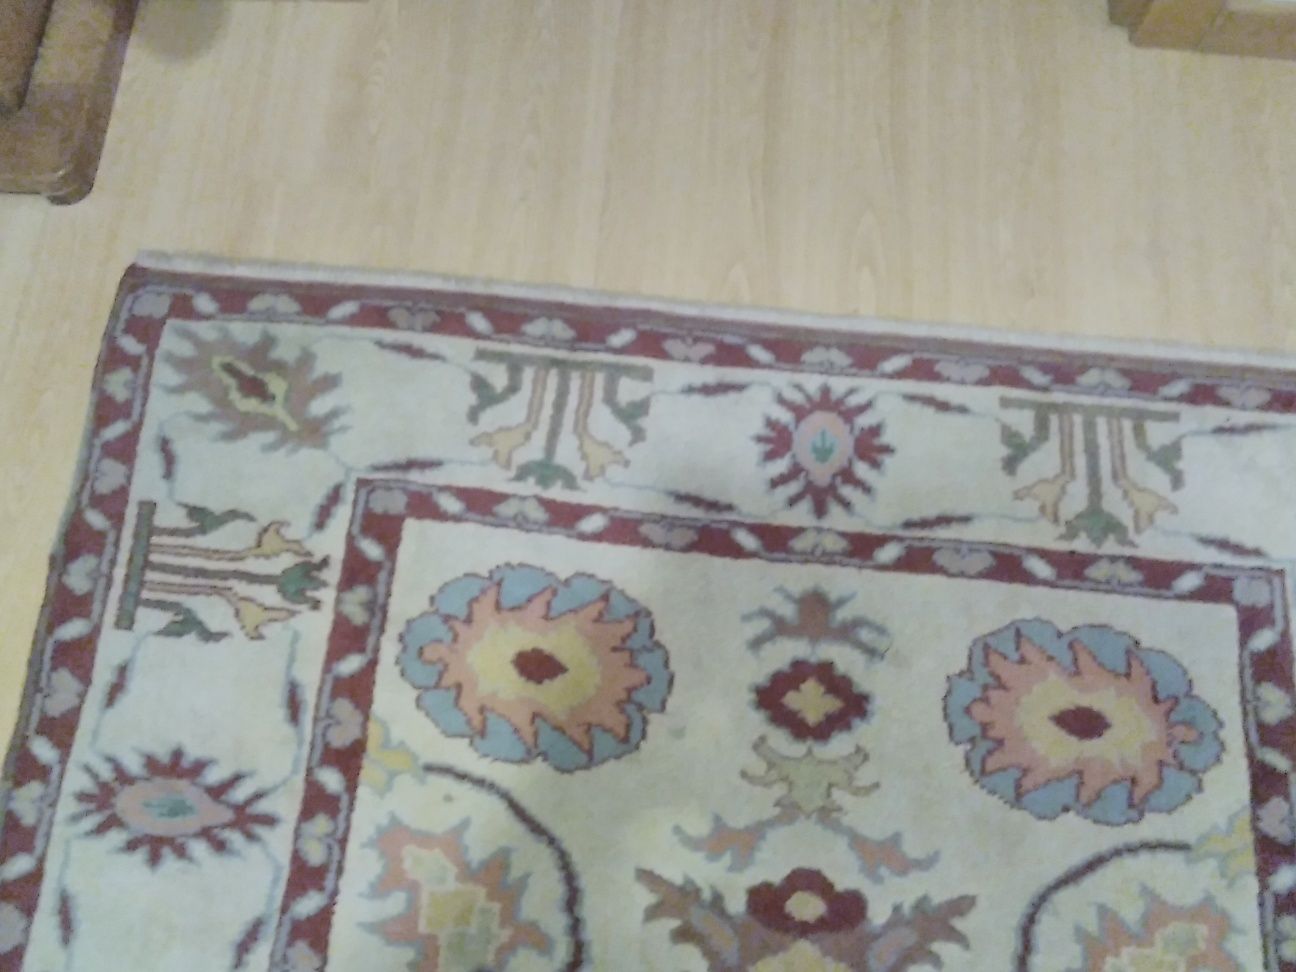 Carpete turca original, lã grossa, P/ despachar